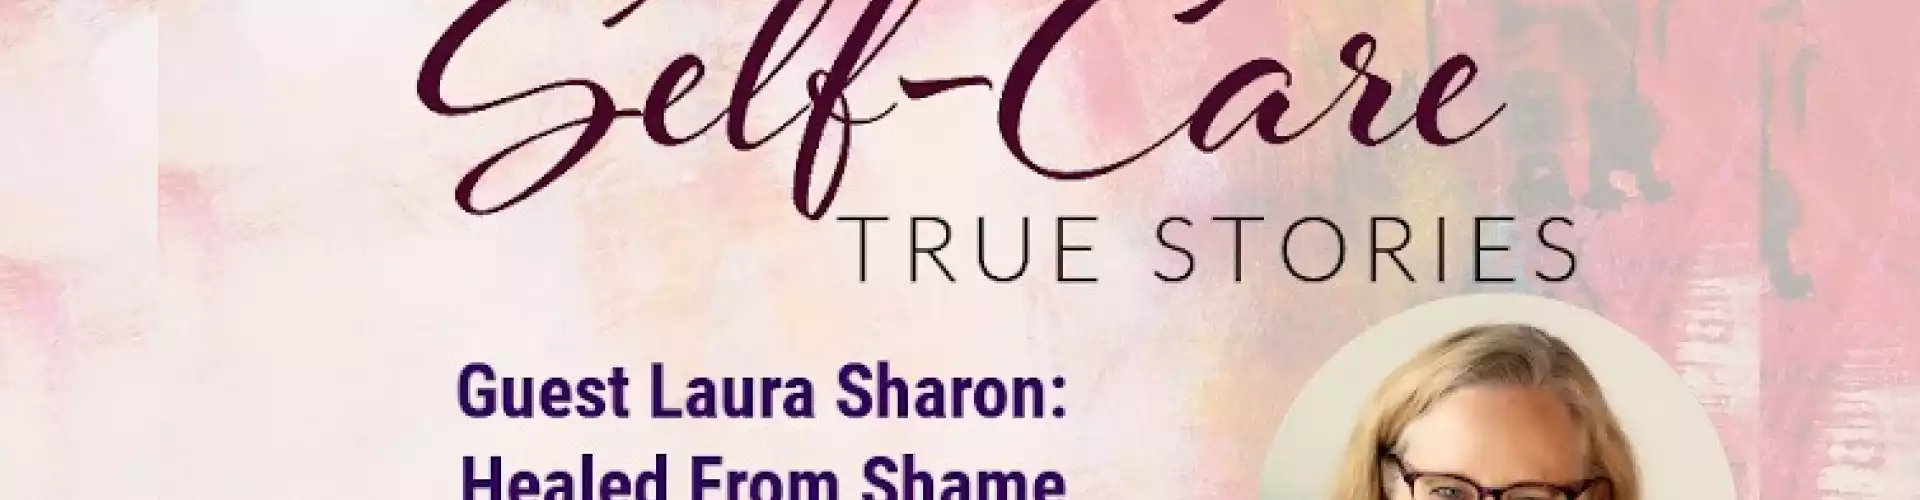 Histoires vraies de soins personnels avec l'invitée Laura Sharon : guérie de la honte